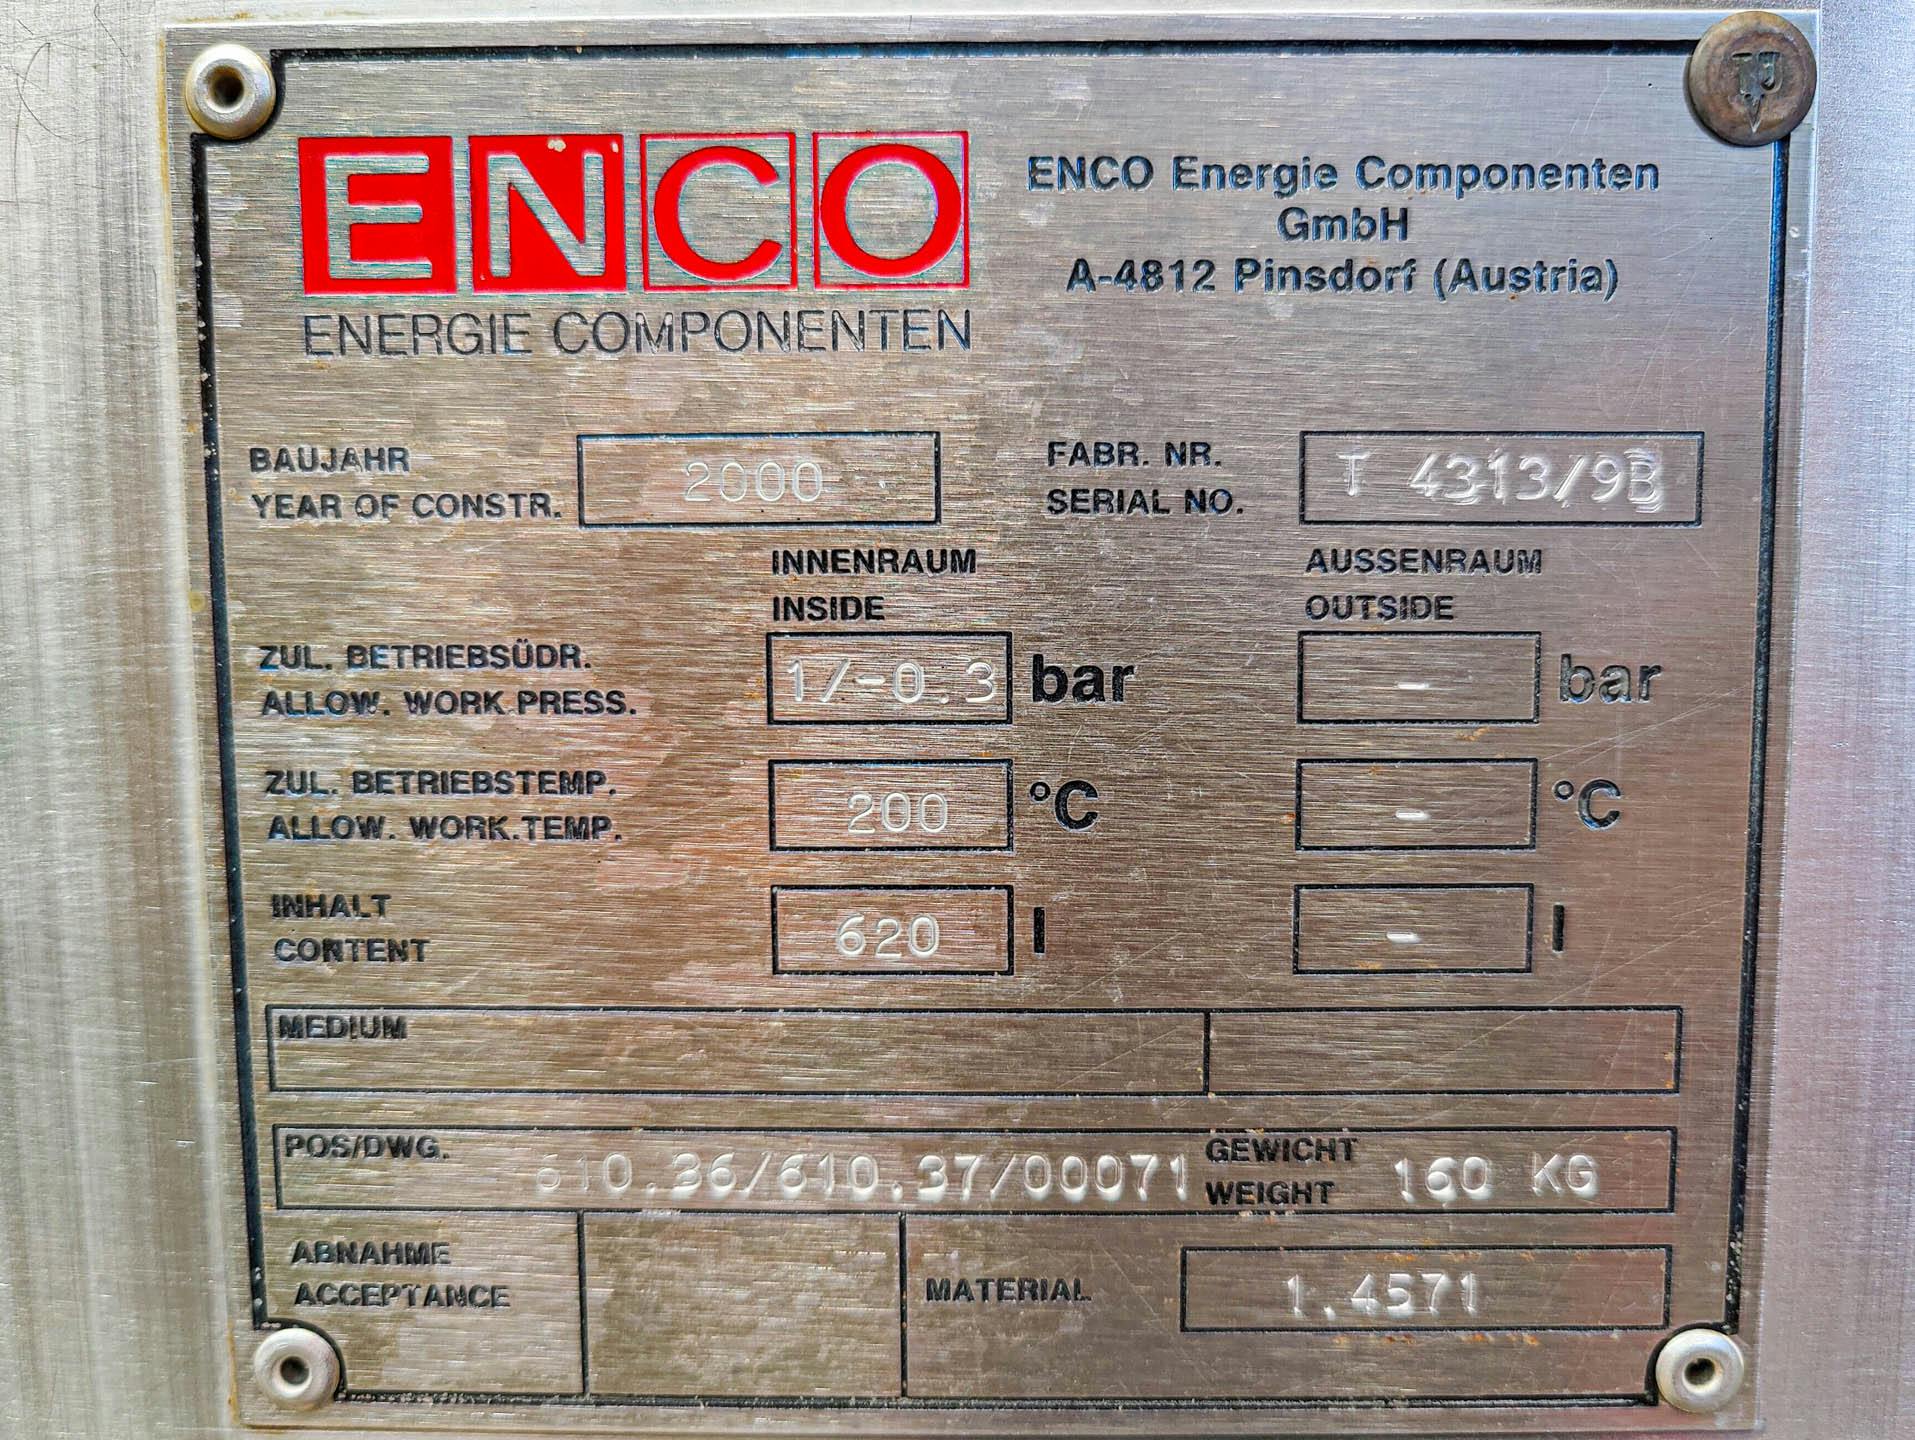 Enco 620 Ltr. - Serbatoio a pressione - image 7